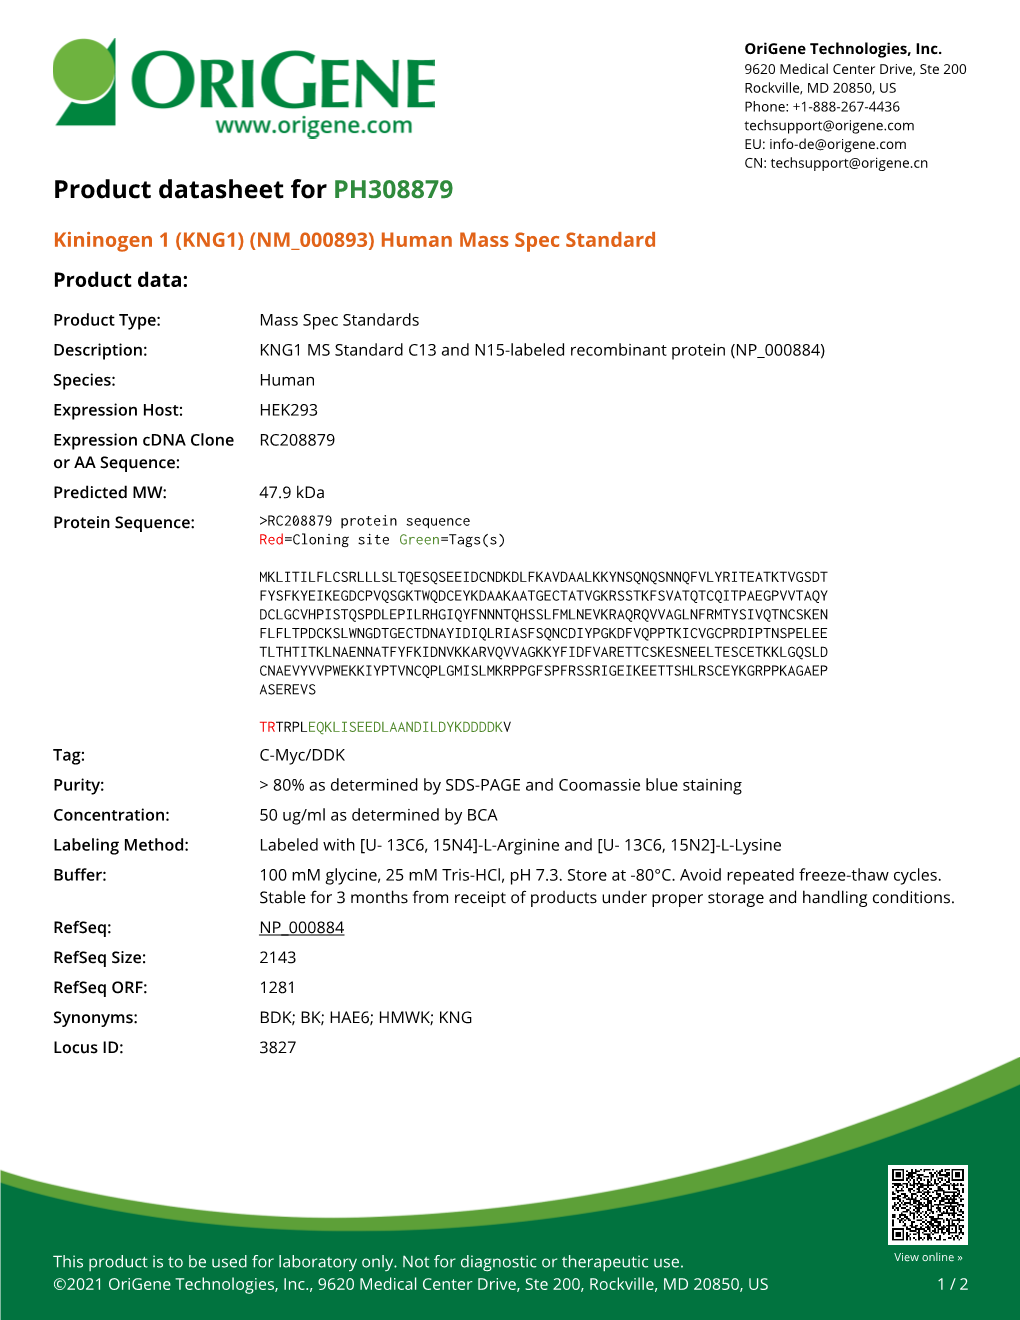 Kininogen 1 (KNG1) (NM 000893) Human Mass Spec Standard Product Data